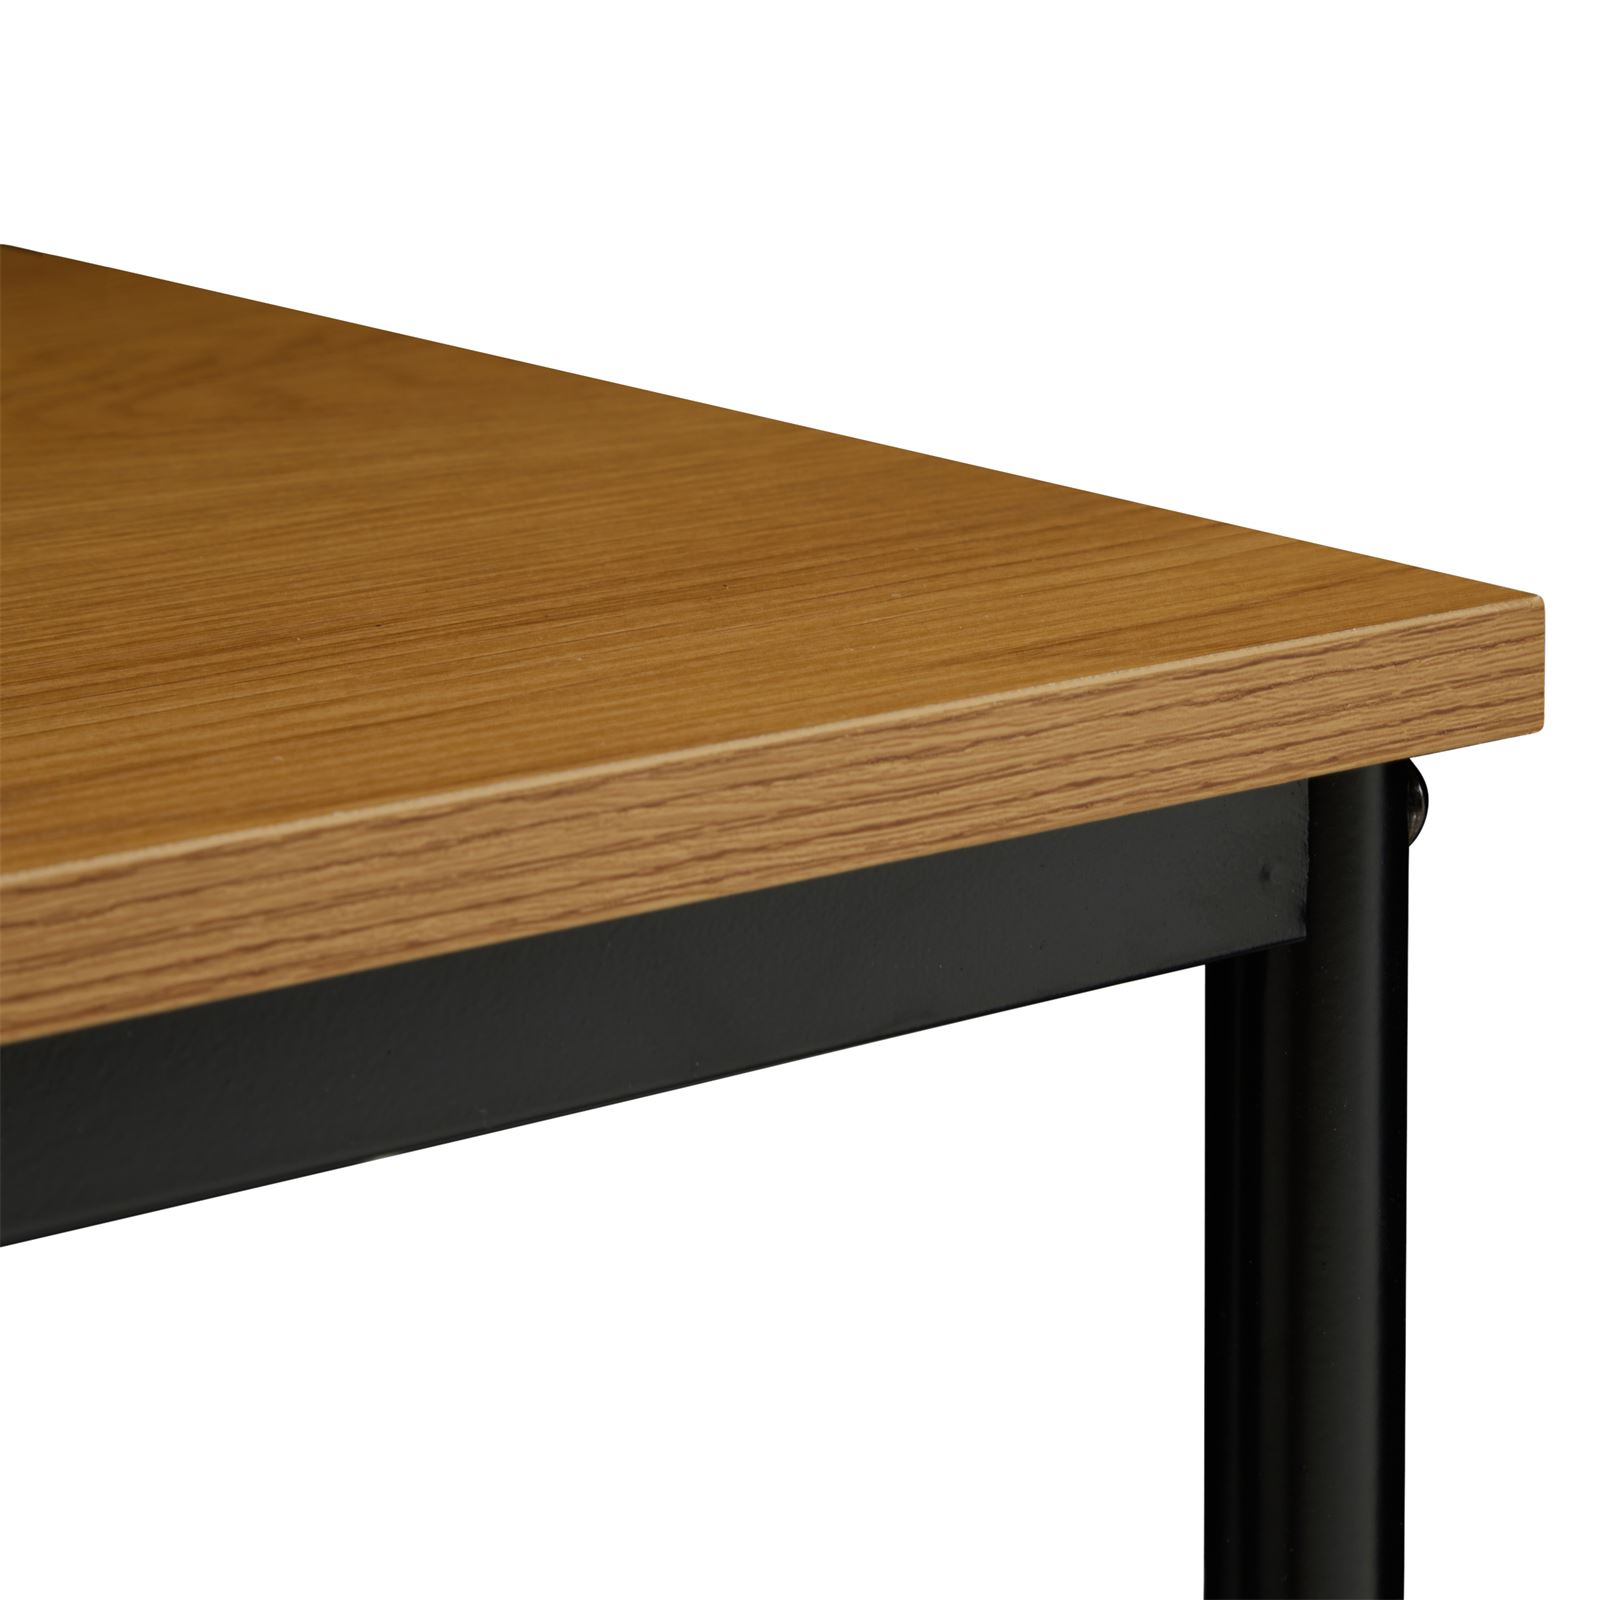 Schreibtisch im Industrial Stil aus Metall und MDF Holzoptik große Tischfläche